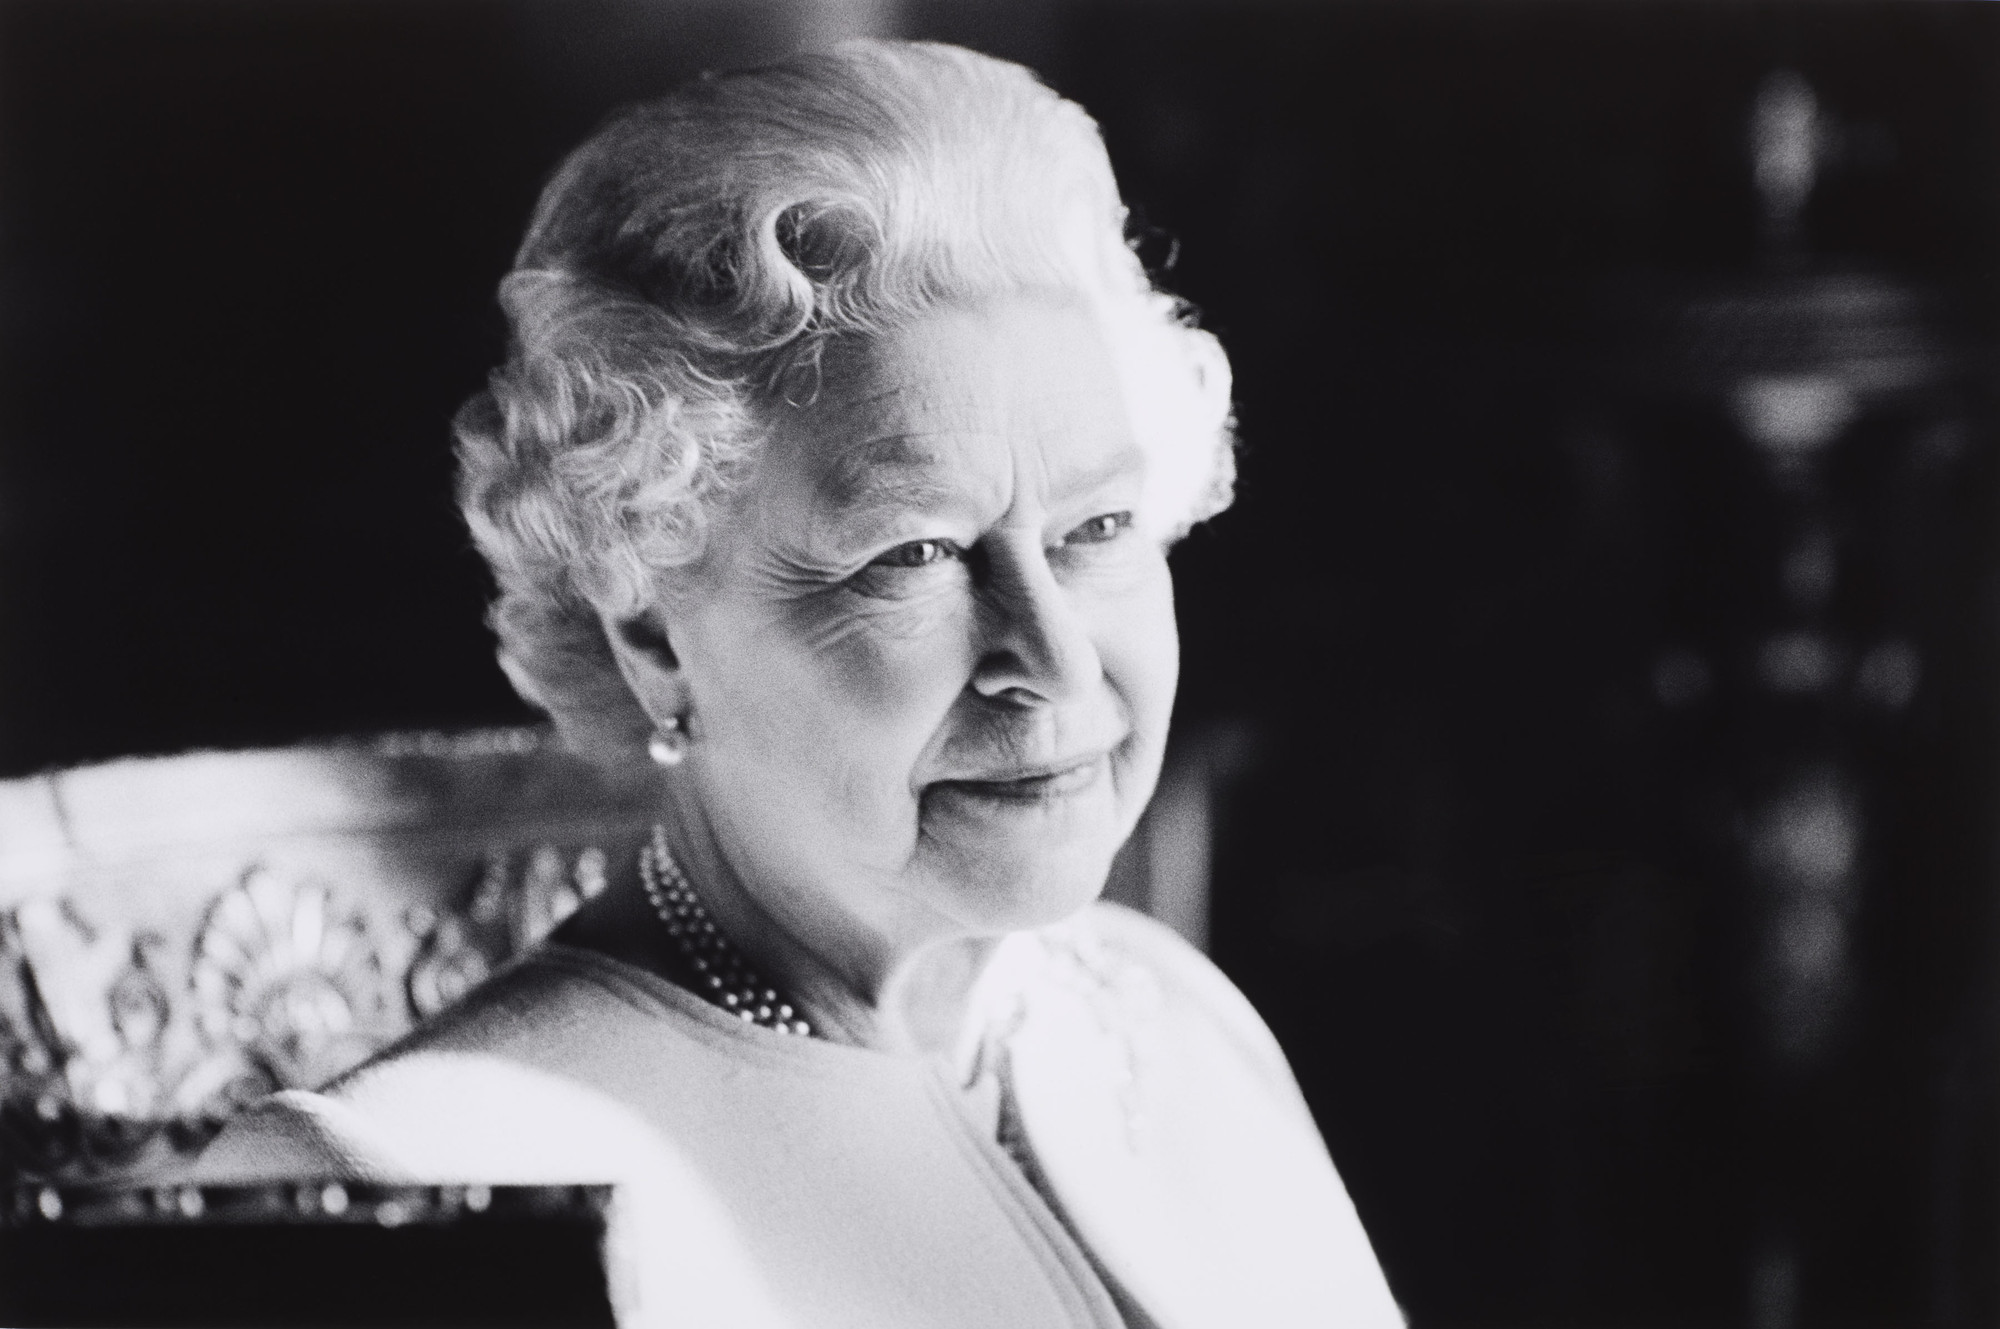 Você está visualizando atualmente Chefes de Estado lamentam morte da rainha Elizabeth II